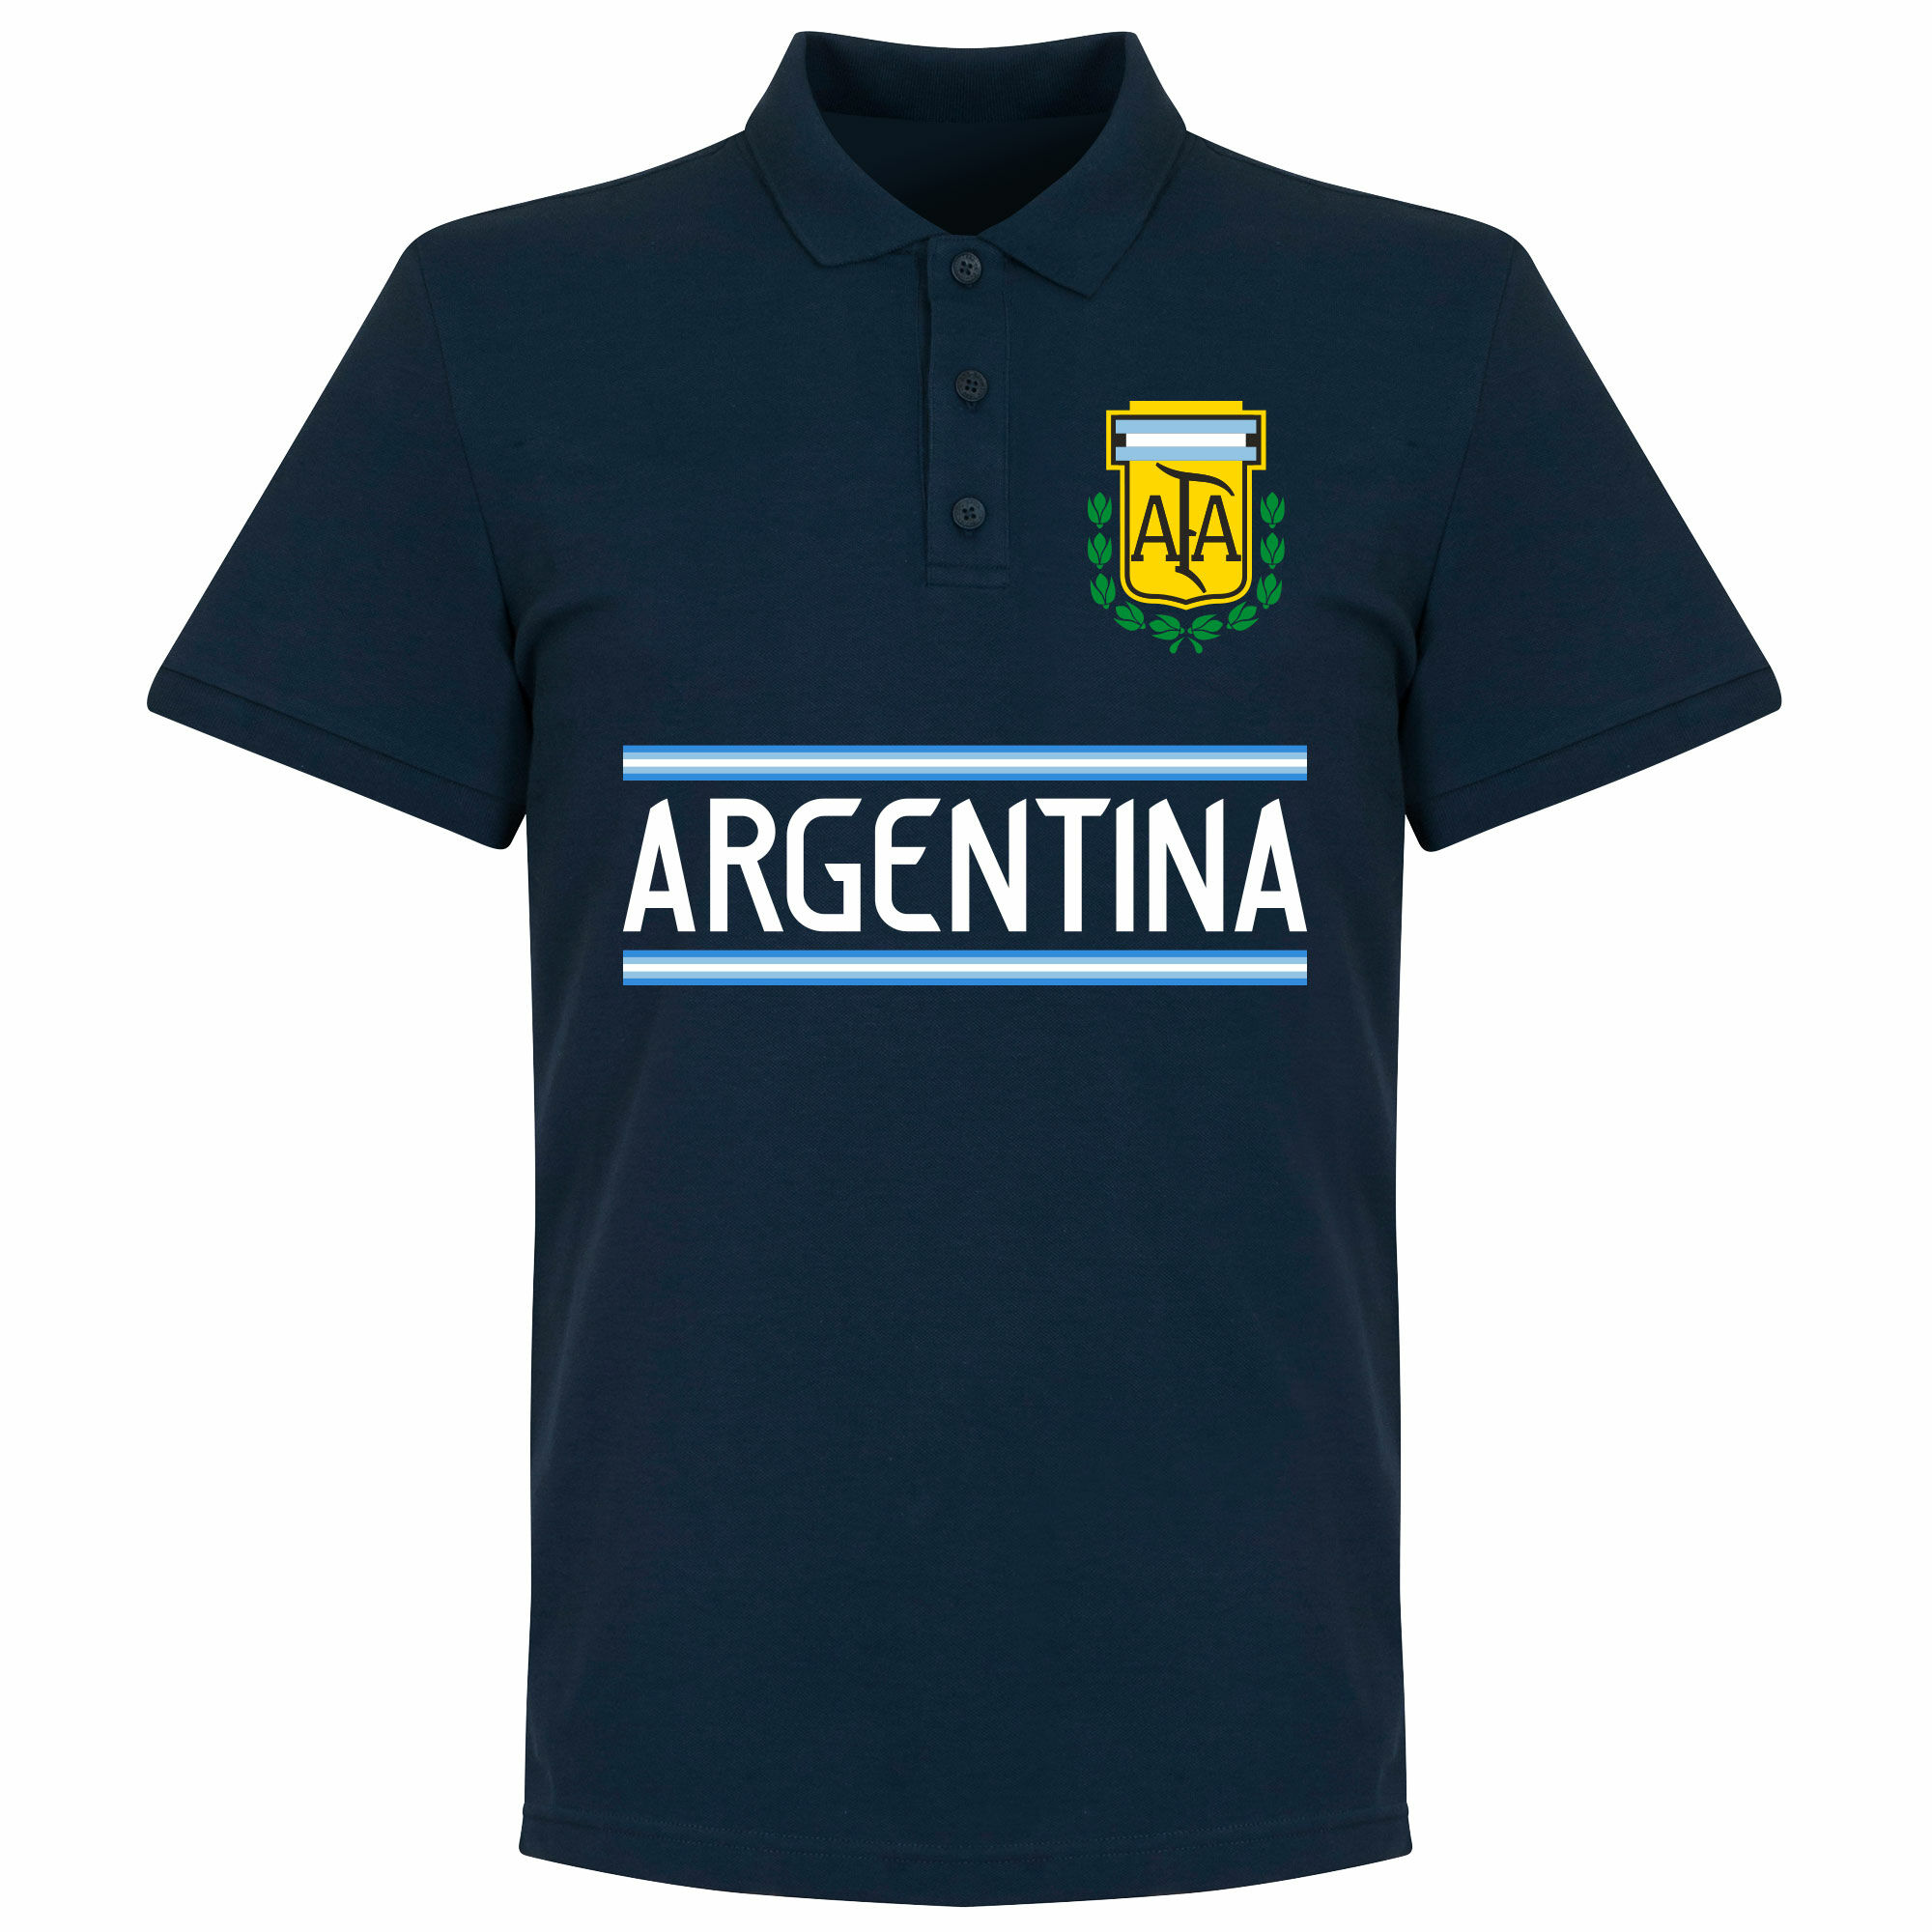 Argentina - Tričko s límečkem - modré